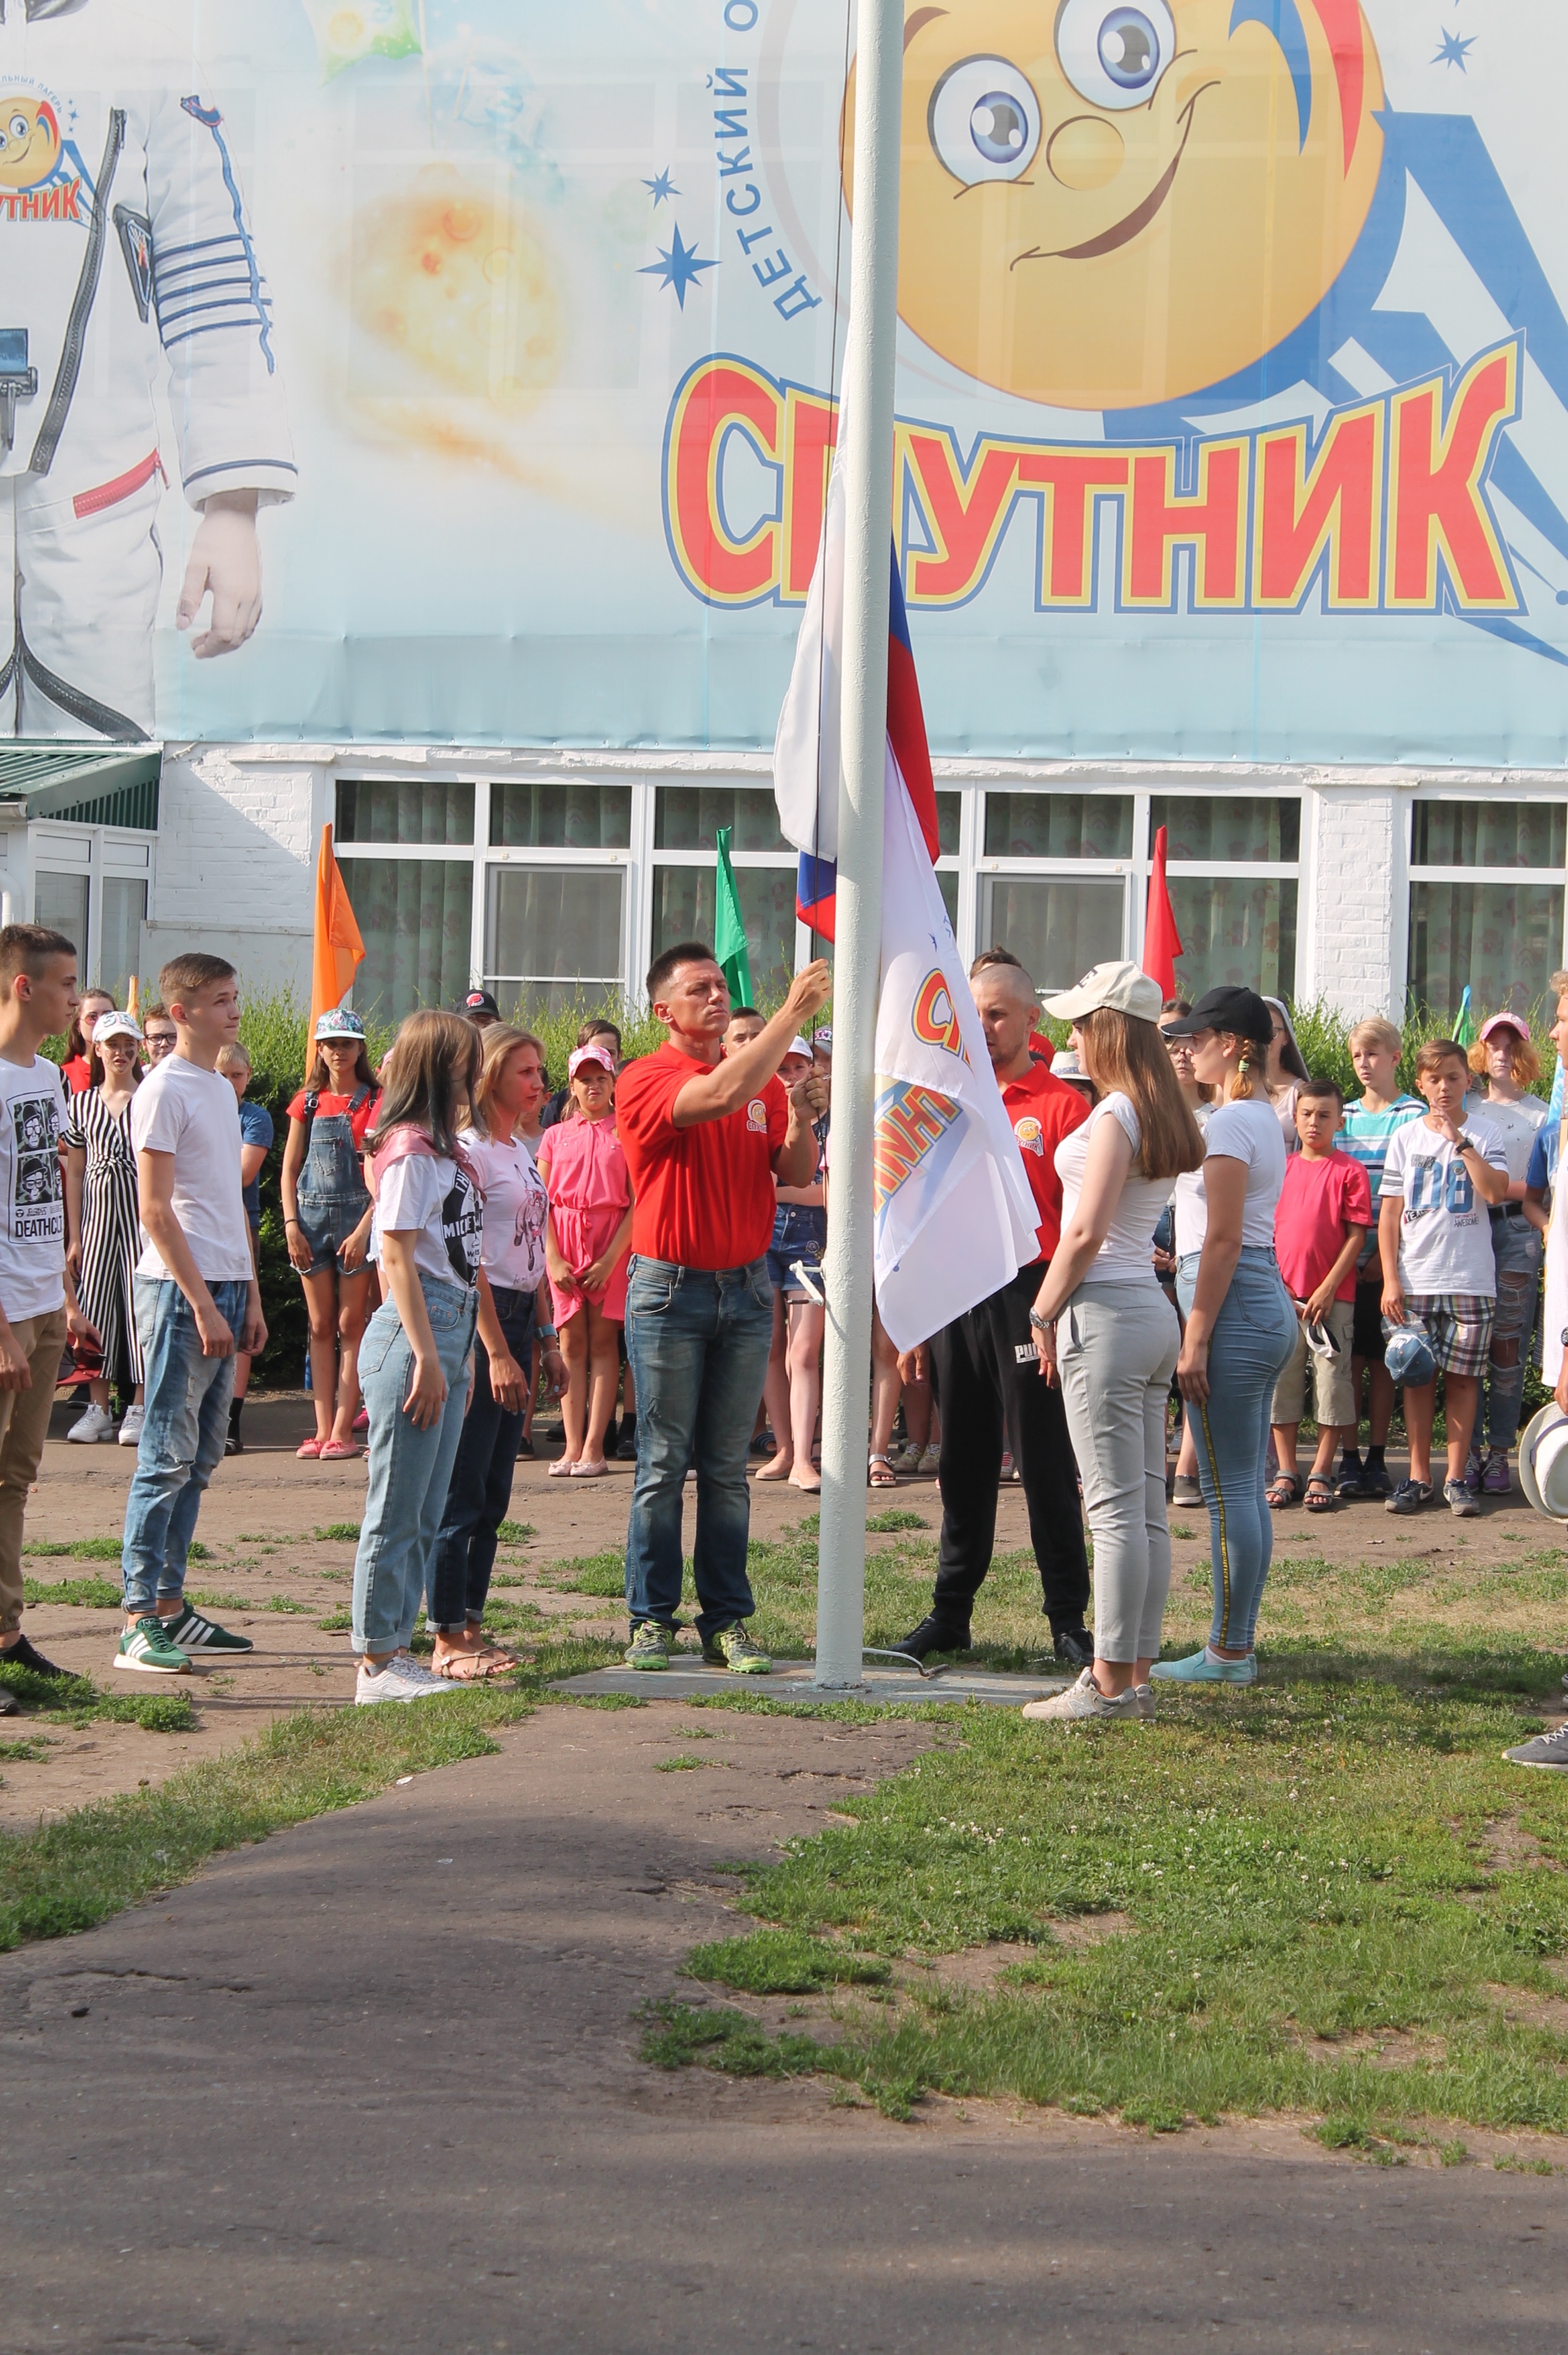 «Спутник» – Оздоровительный лагерь в Омске, фото 2